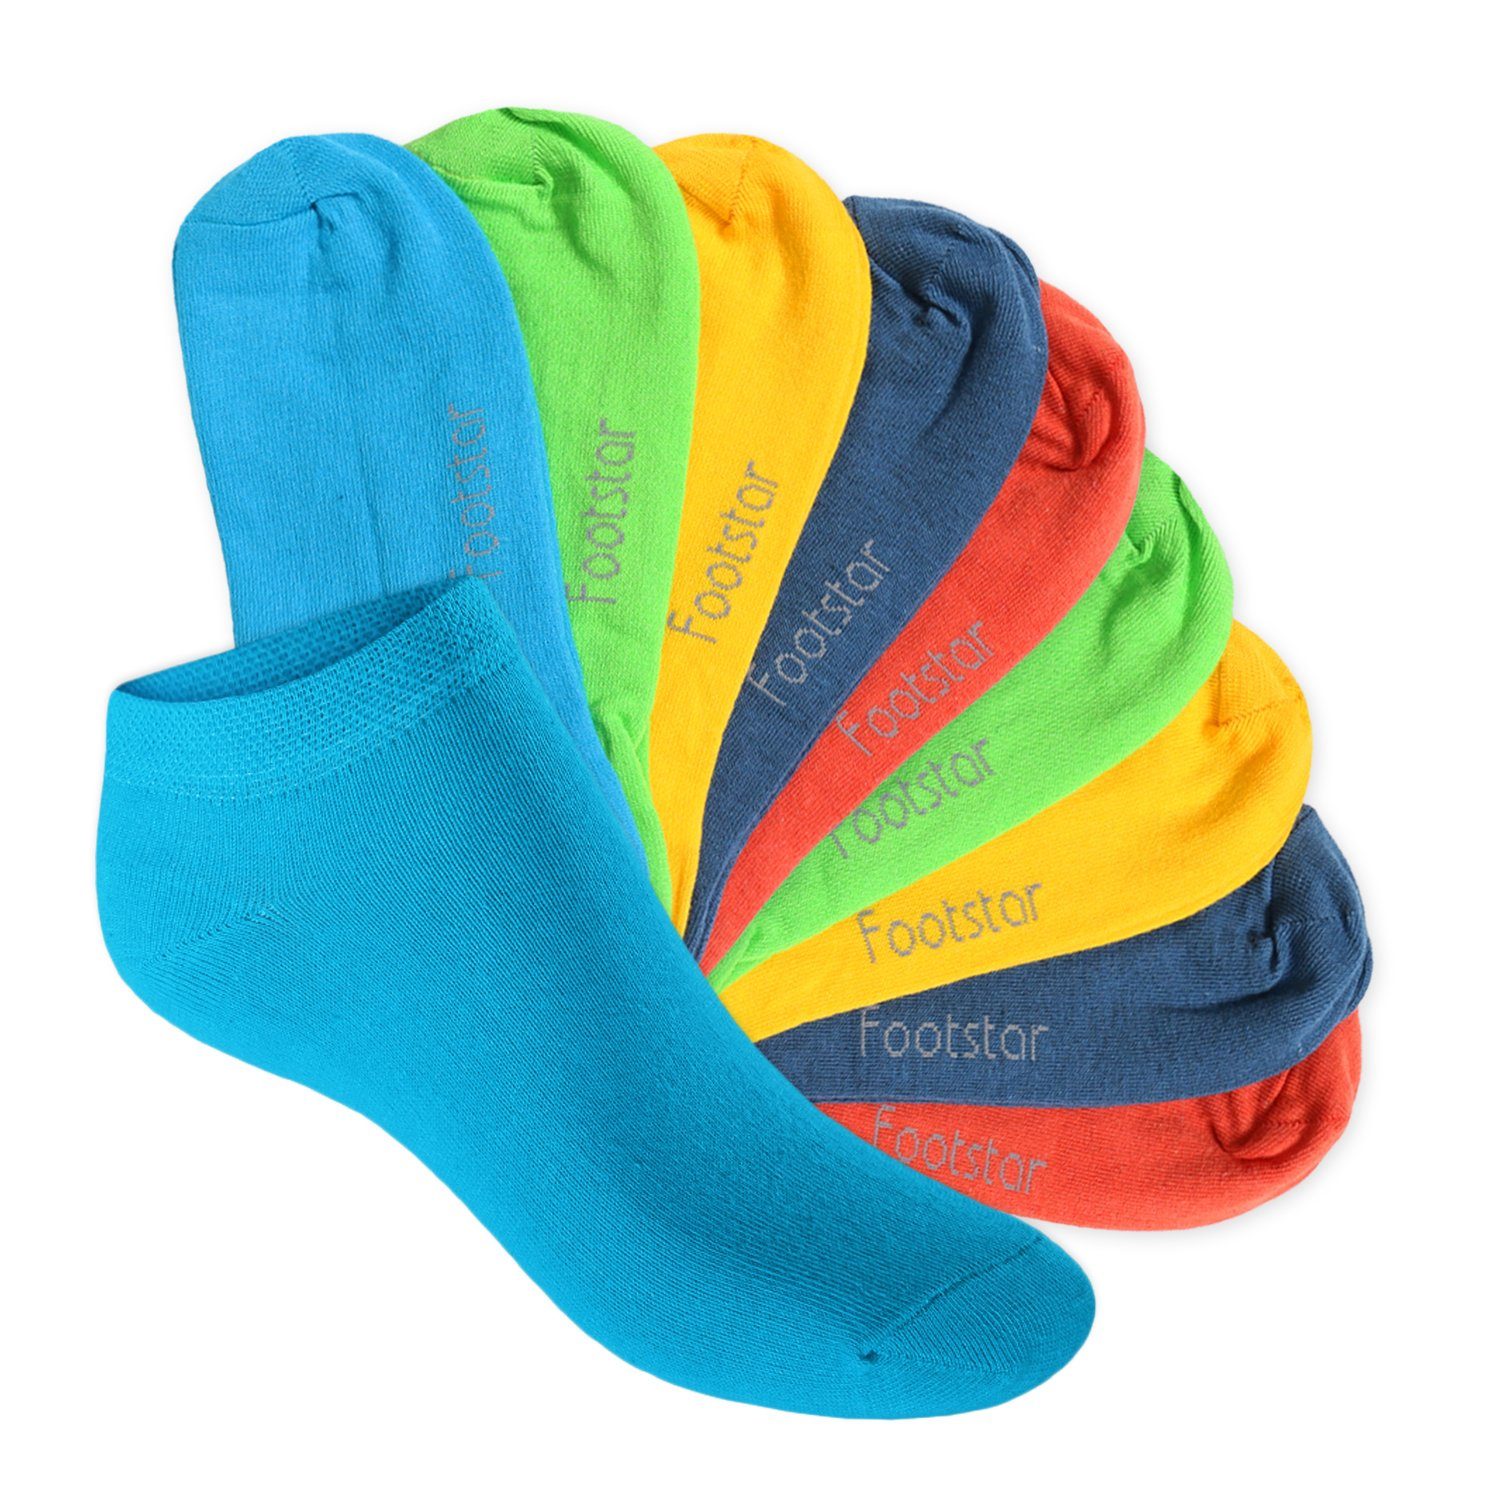 Footstar Kurzsocken Kinder Sneaker Socken (10 Paar) - Kurze Socken für Kids Trendfarben